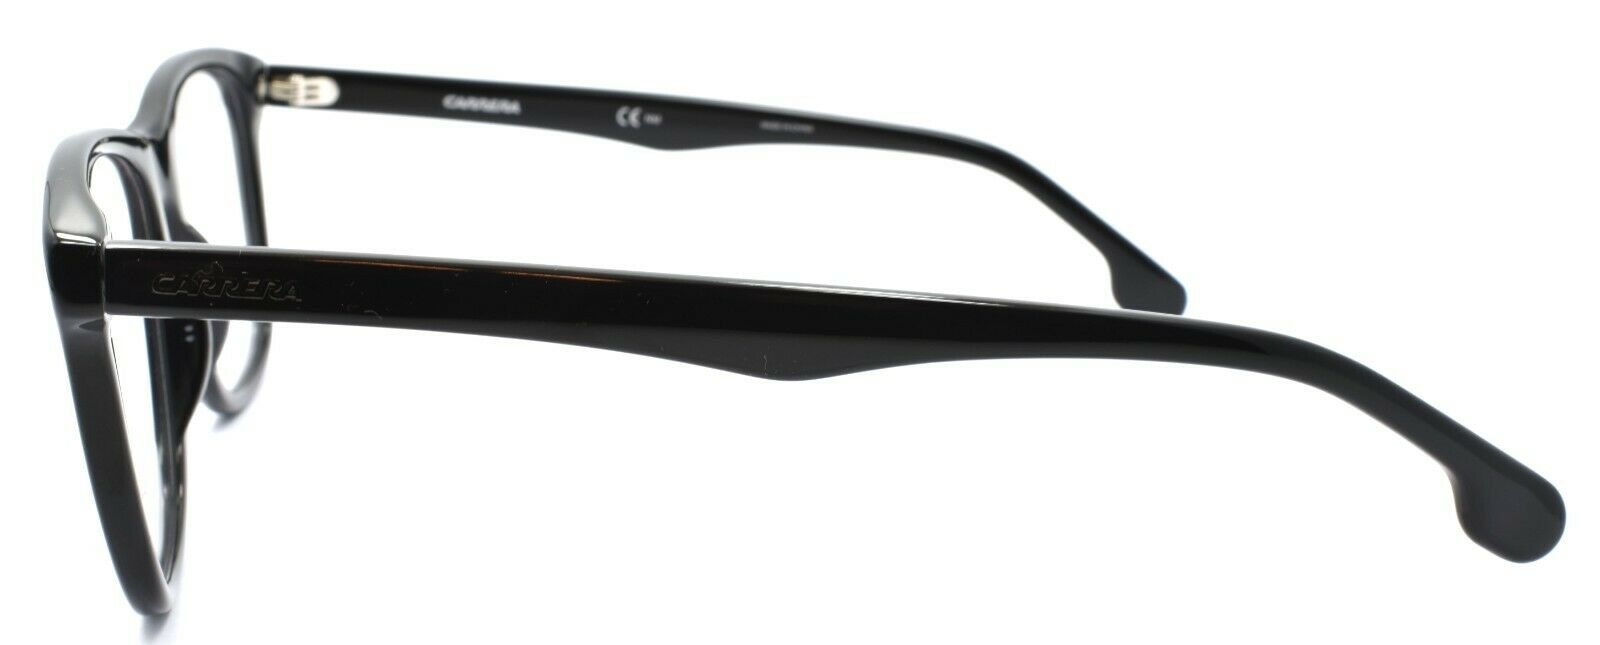 3-Carrera 135/V 807 Men's Eyeglasses Frames 52-19-145 Black + CASE-762753597250-IKSpecs